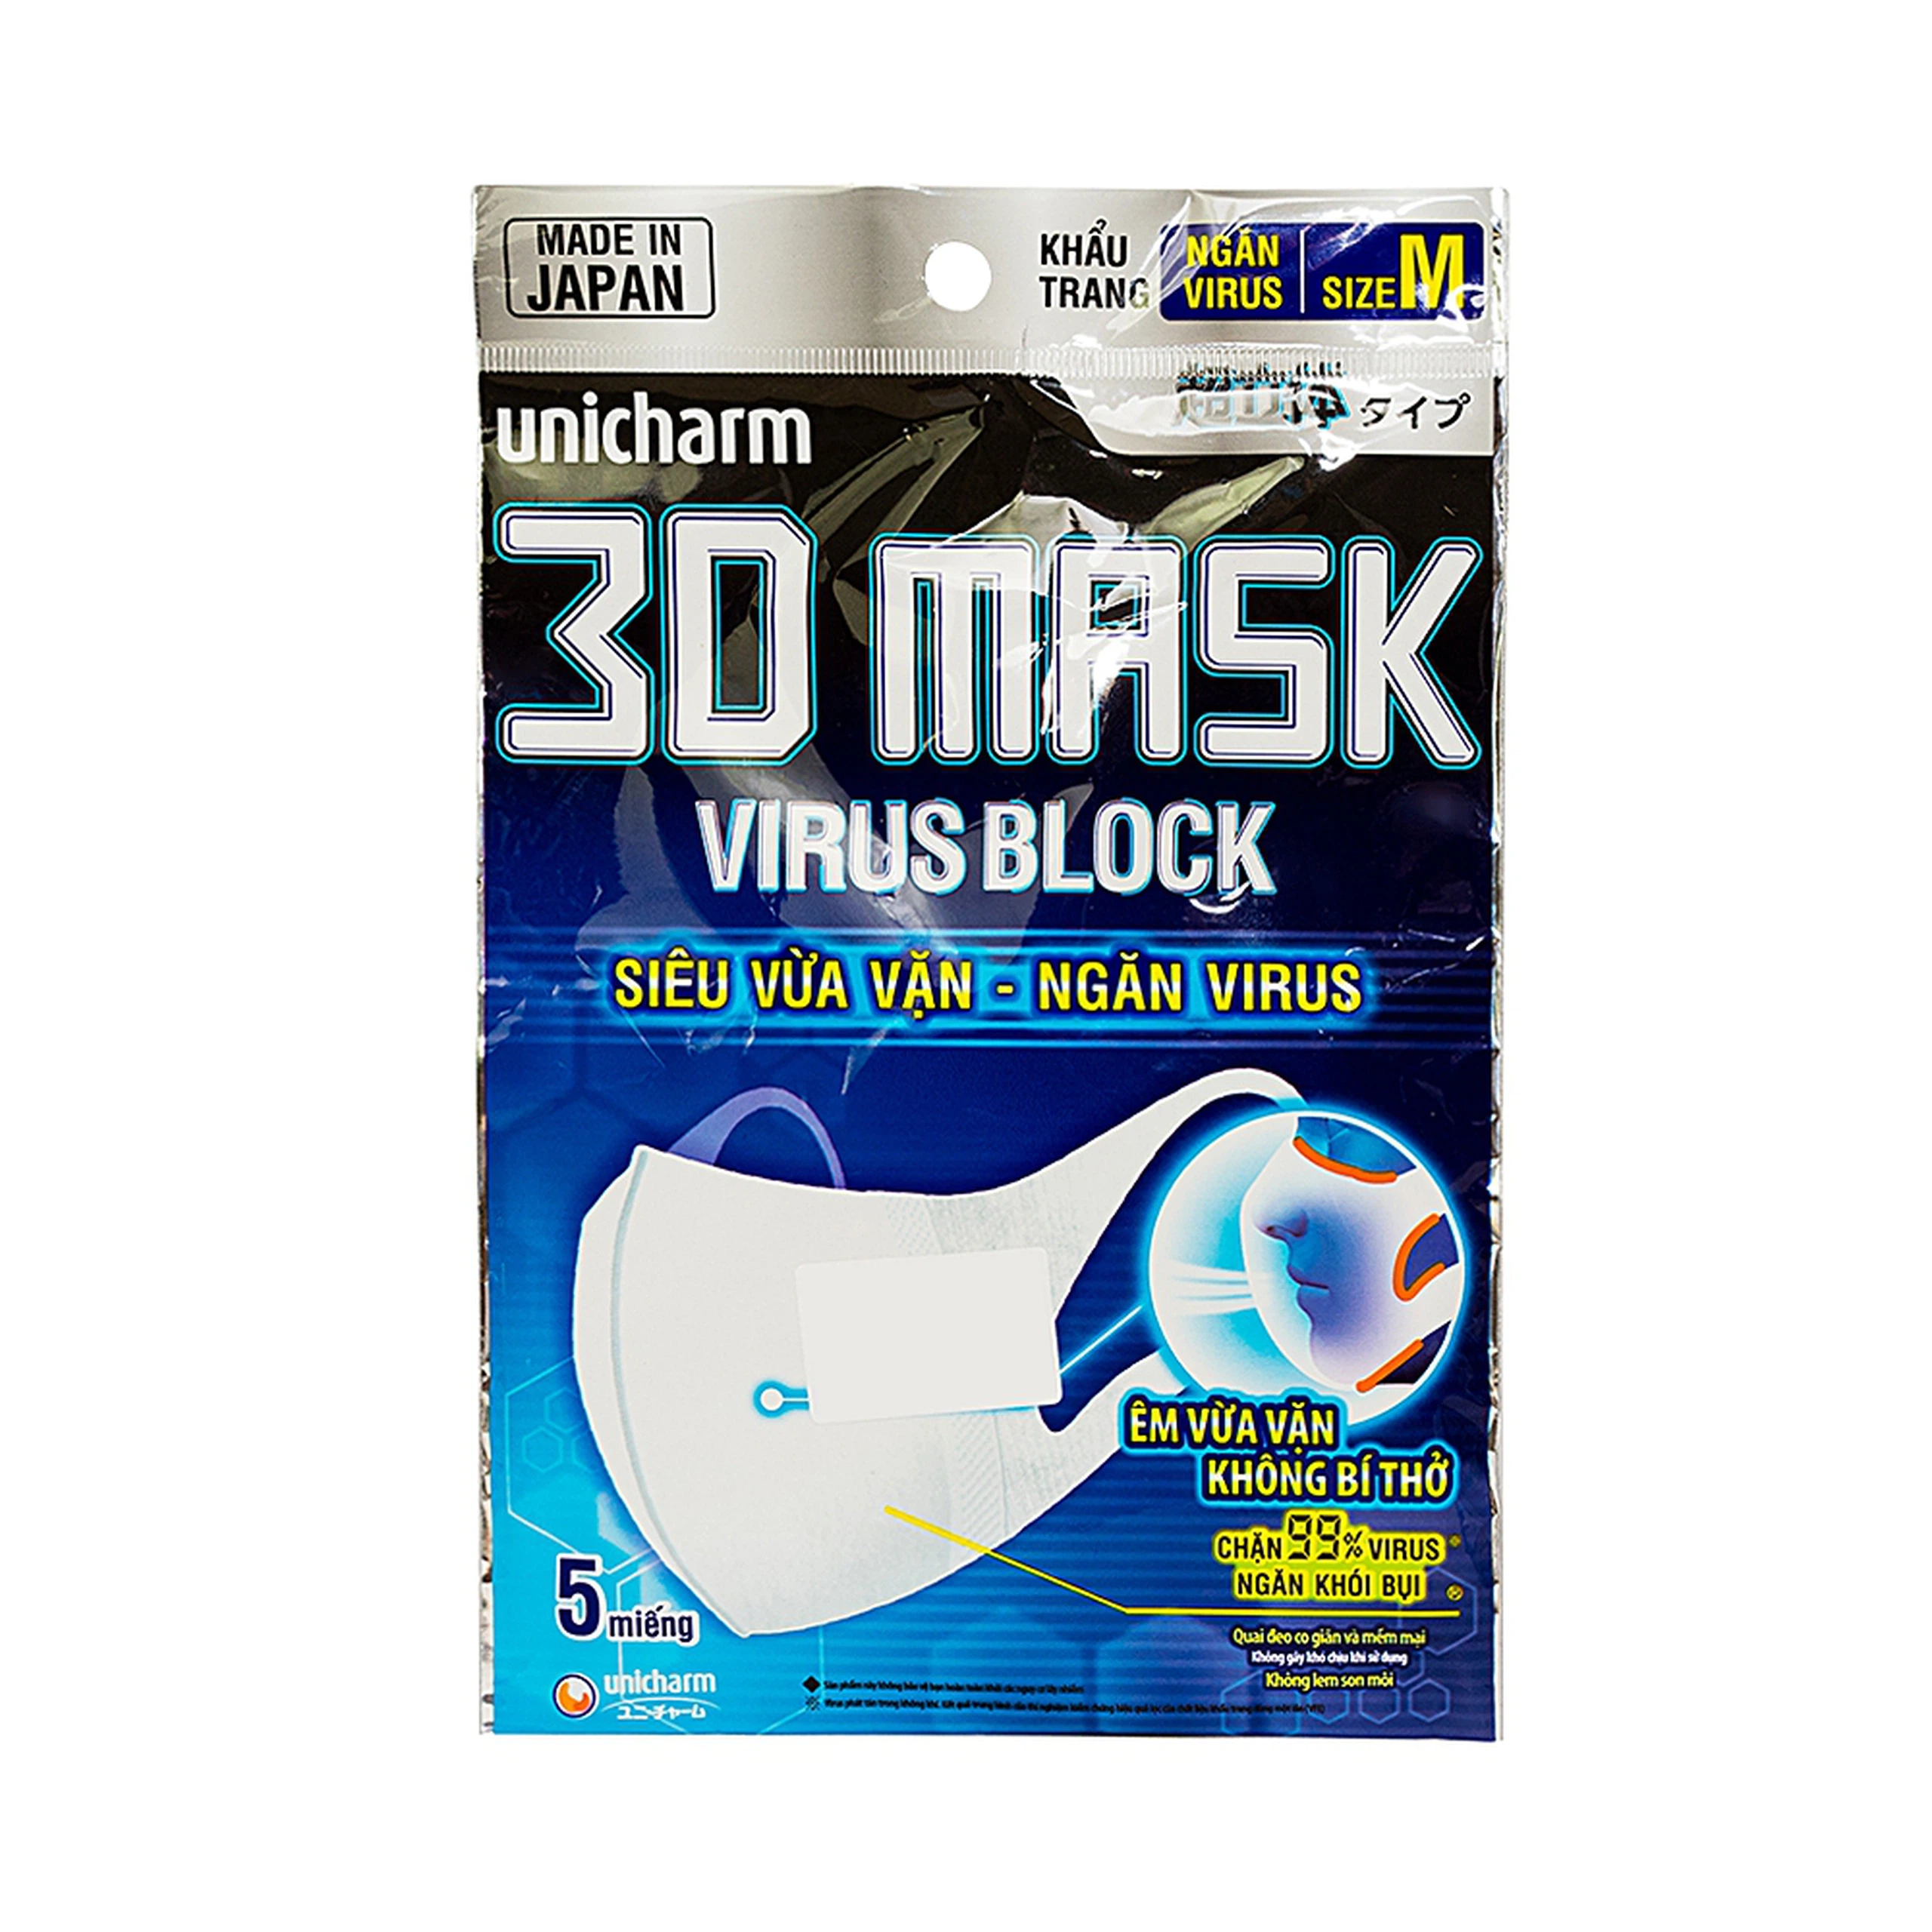 Khẩu trang y tế Mask Virus Block Unicharm 3 lớp hỗ trợ ngăn khói, bụi, kháng khuẩn (5 cái)